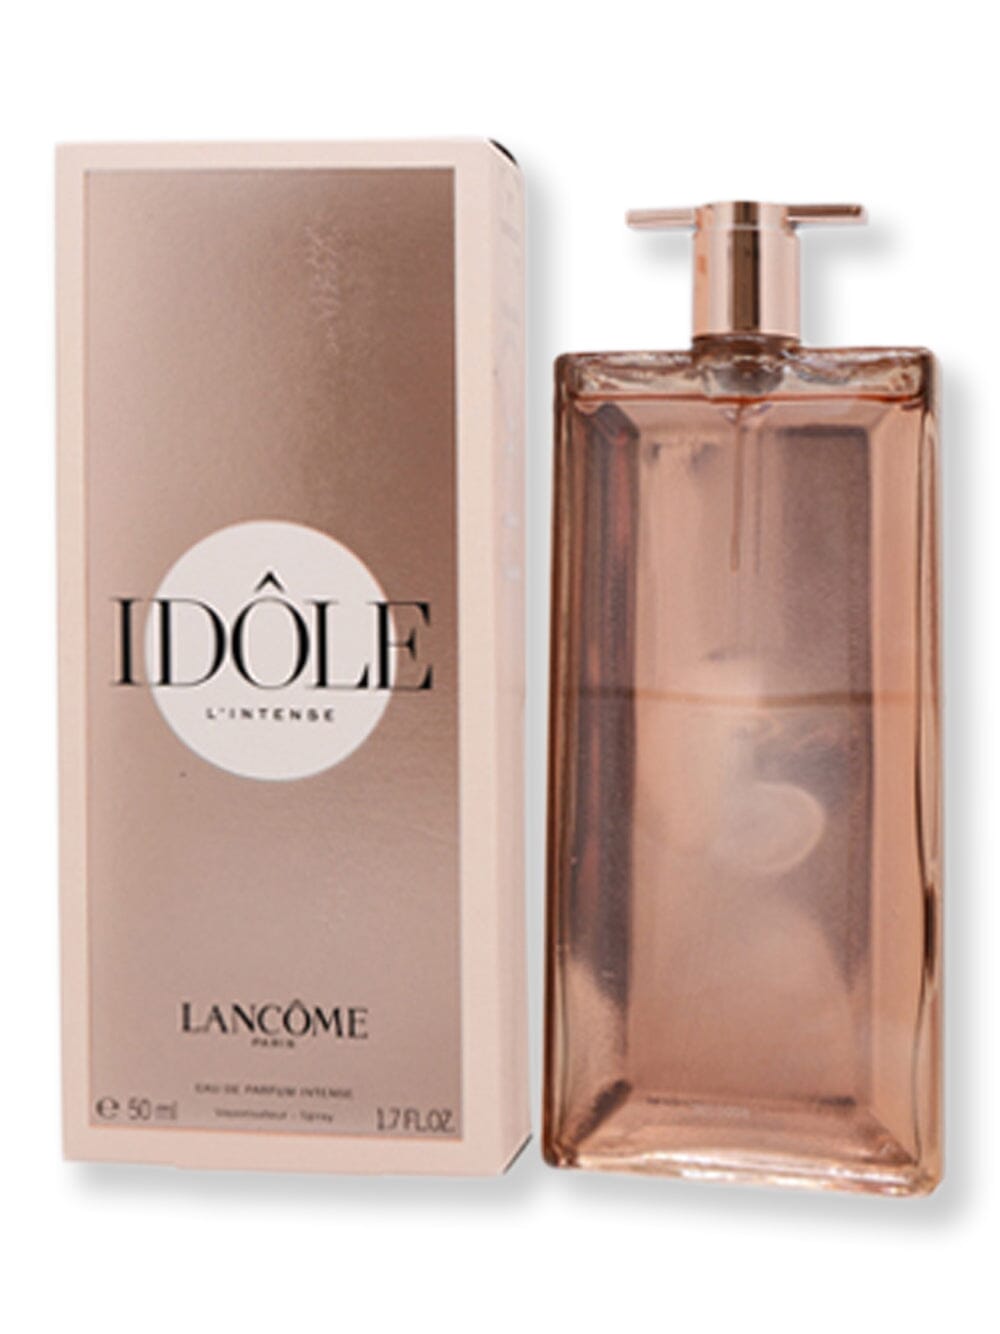 Lancome Lancome Idole L'intense EDP Spray Intense 1.7 oz50 ml Perfume 